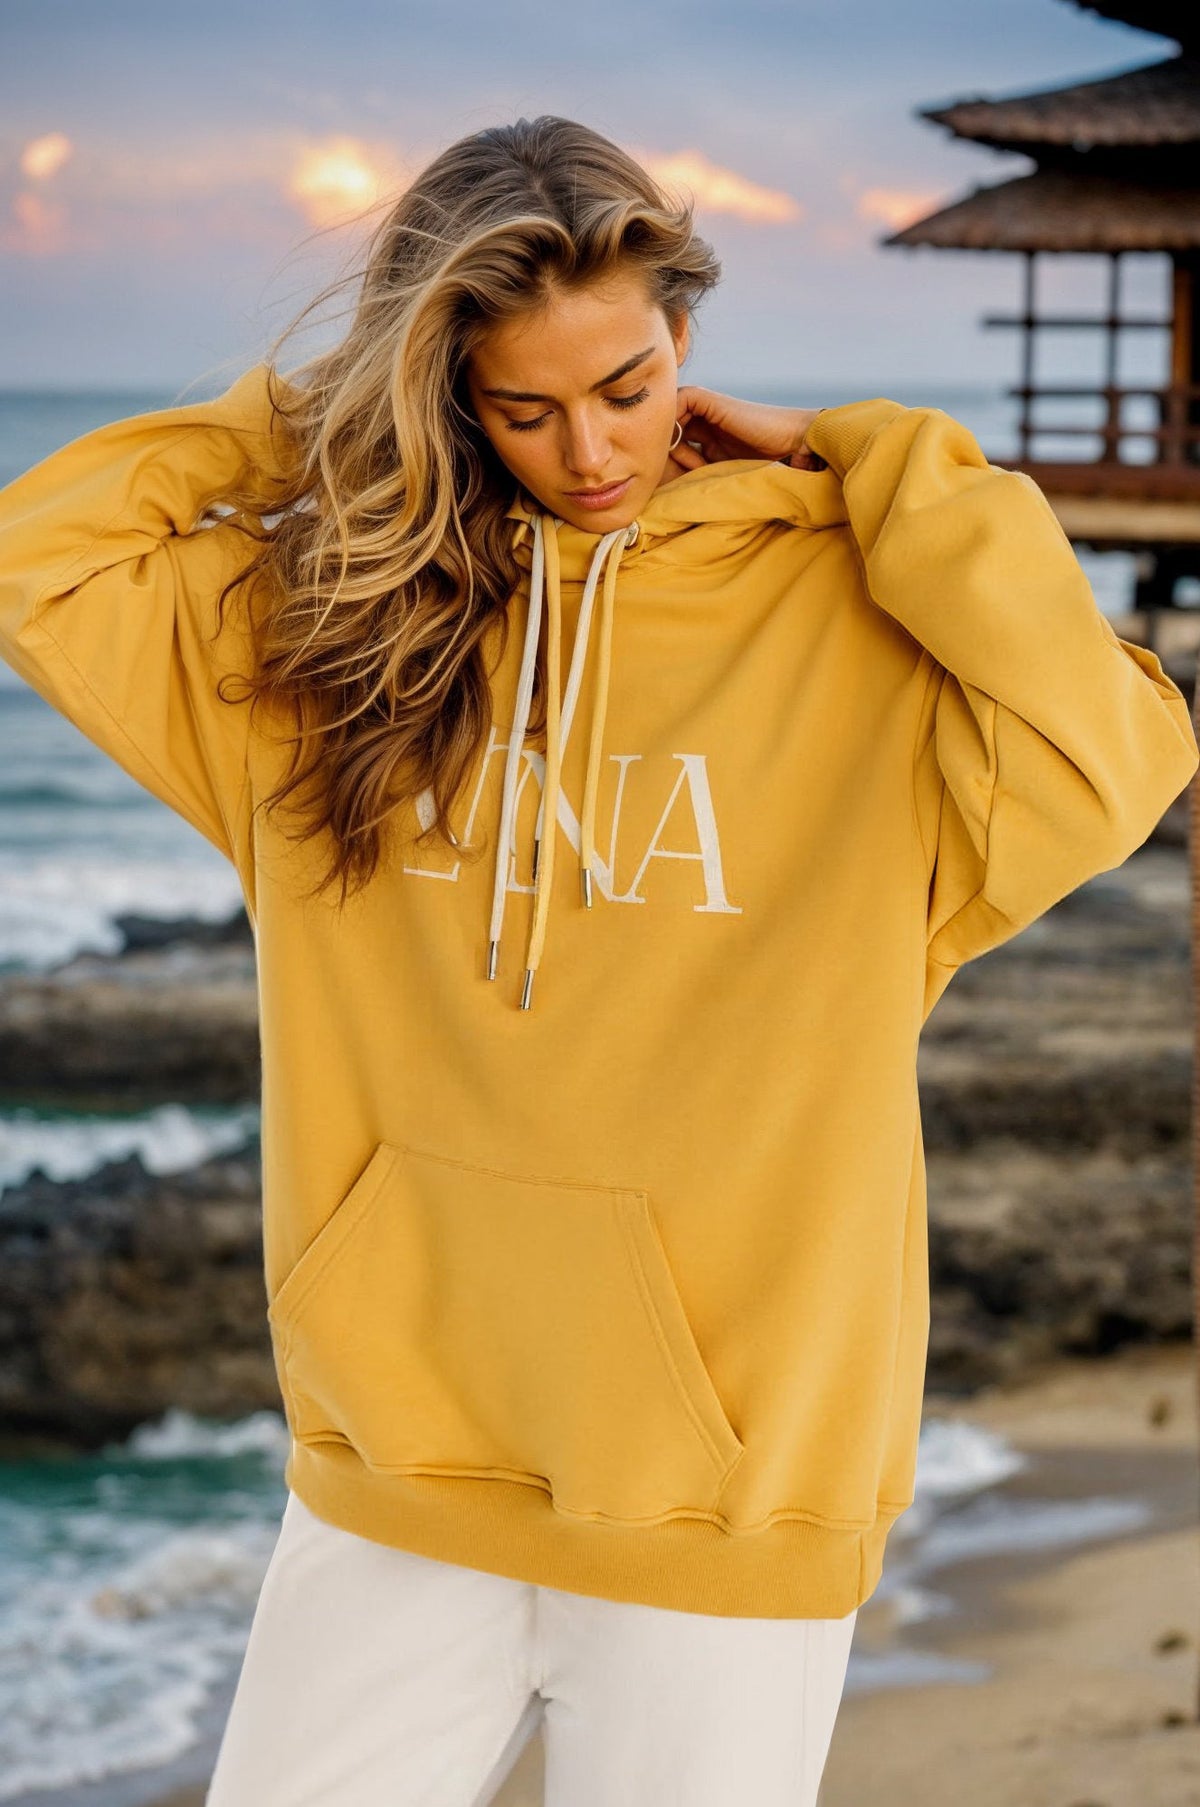 Luna Soleil hoodie